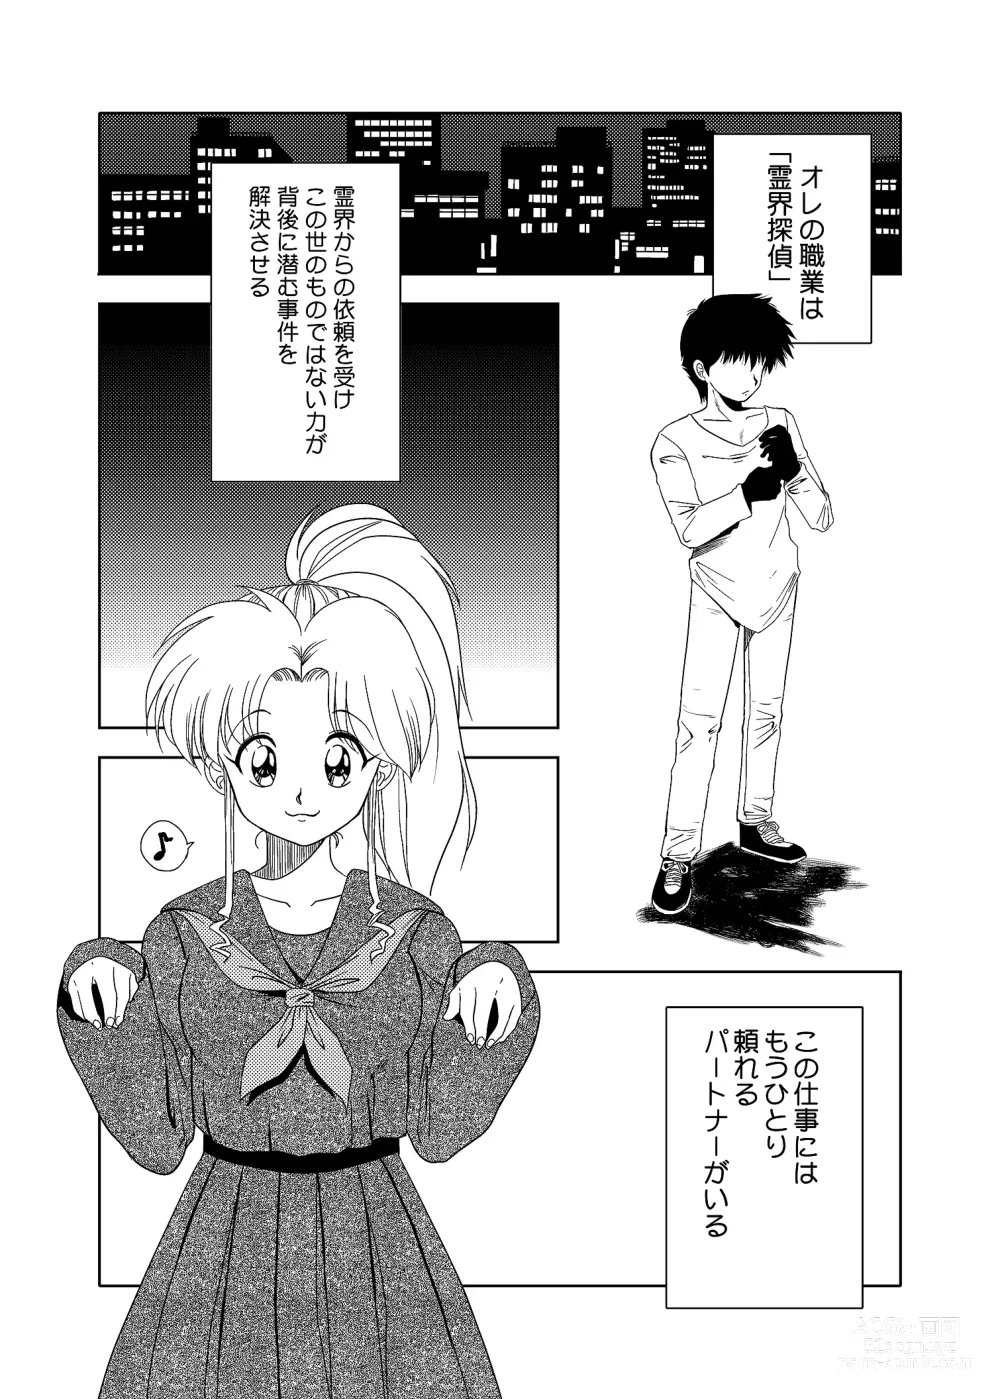 Page 2 of doujinshi Momo Botan